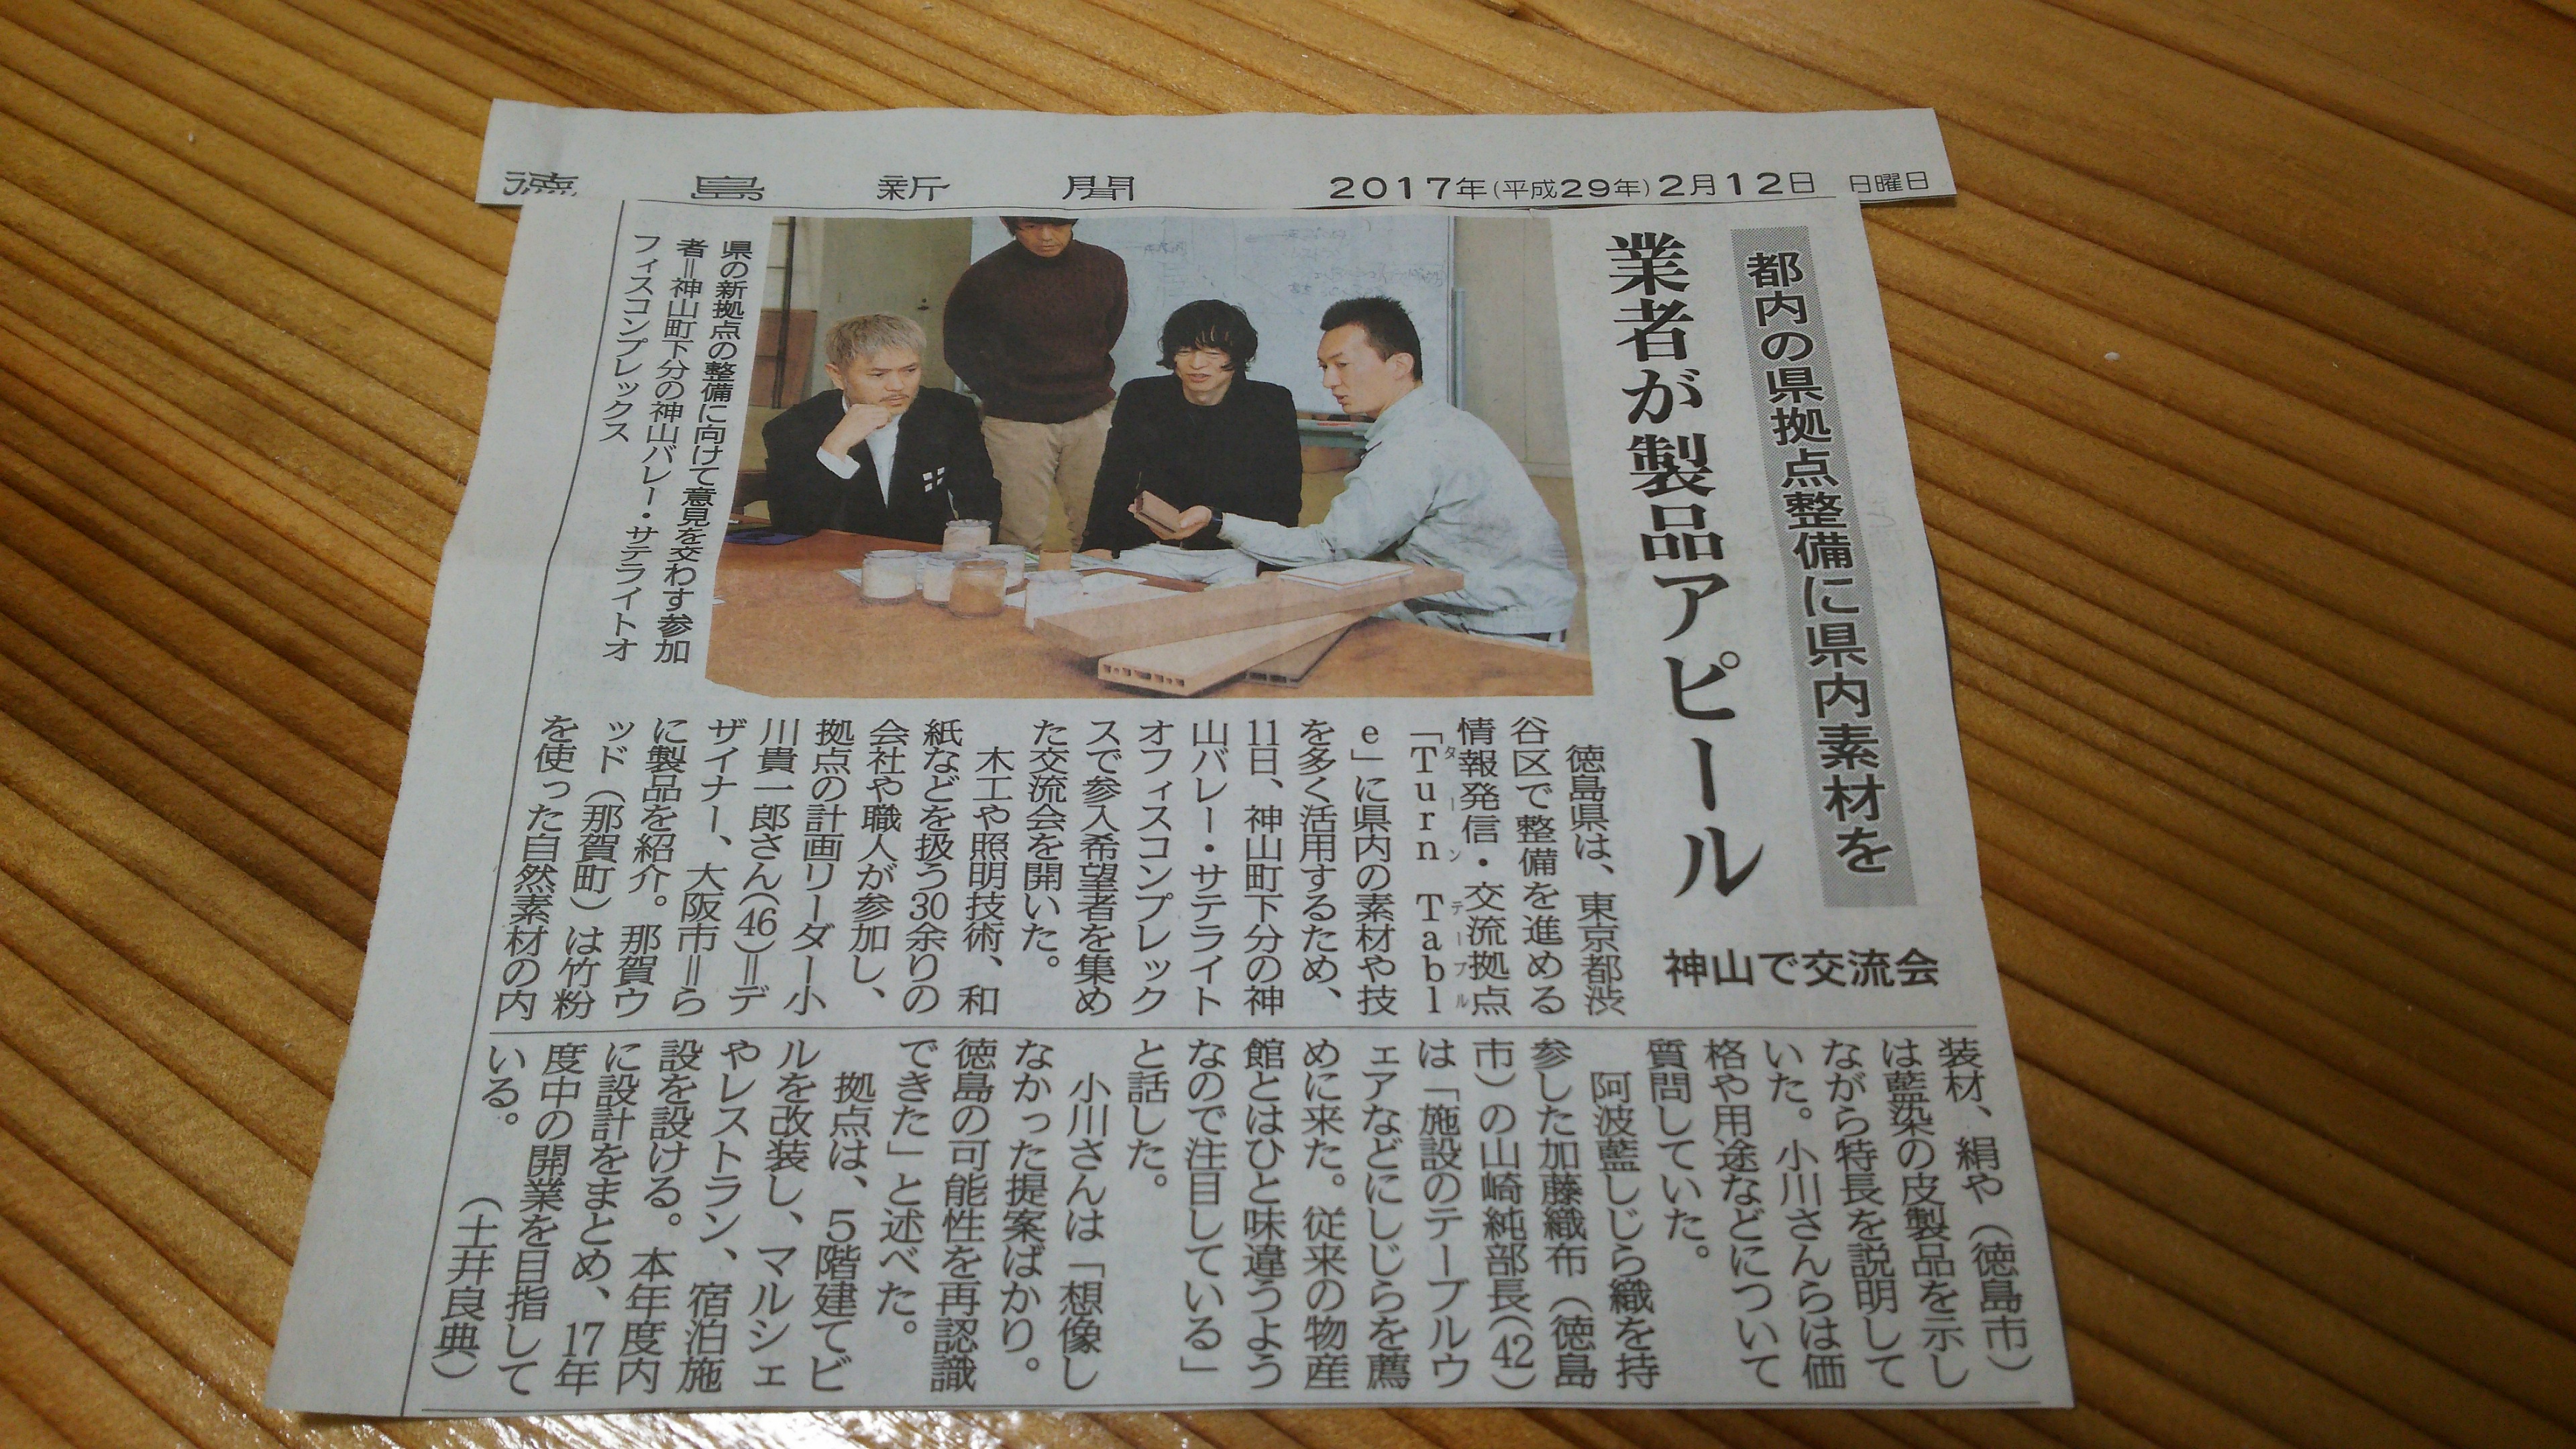 徳島ブランドギャラリー交流会での当社プレゼンが徳島新聞に掲載